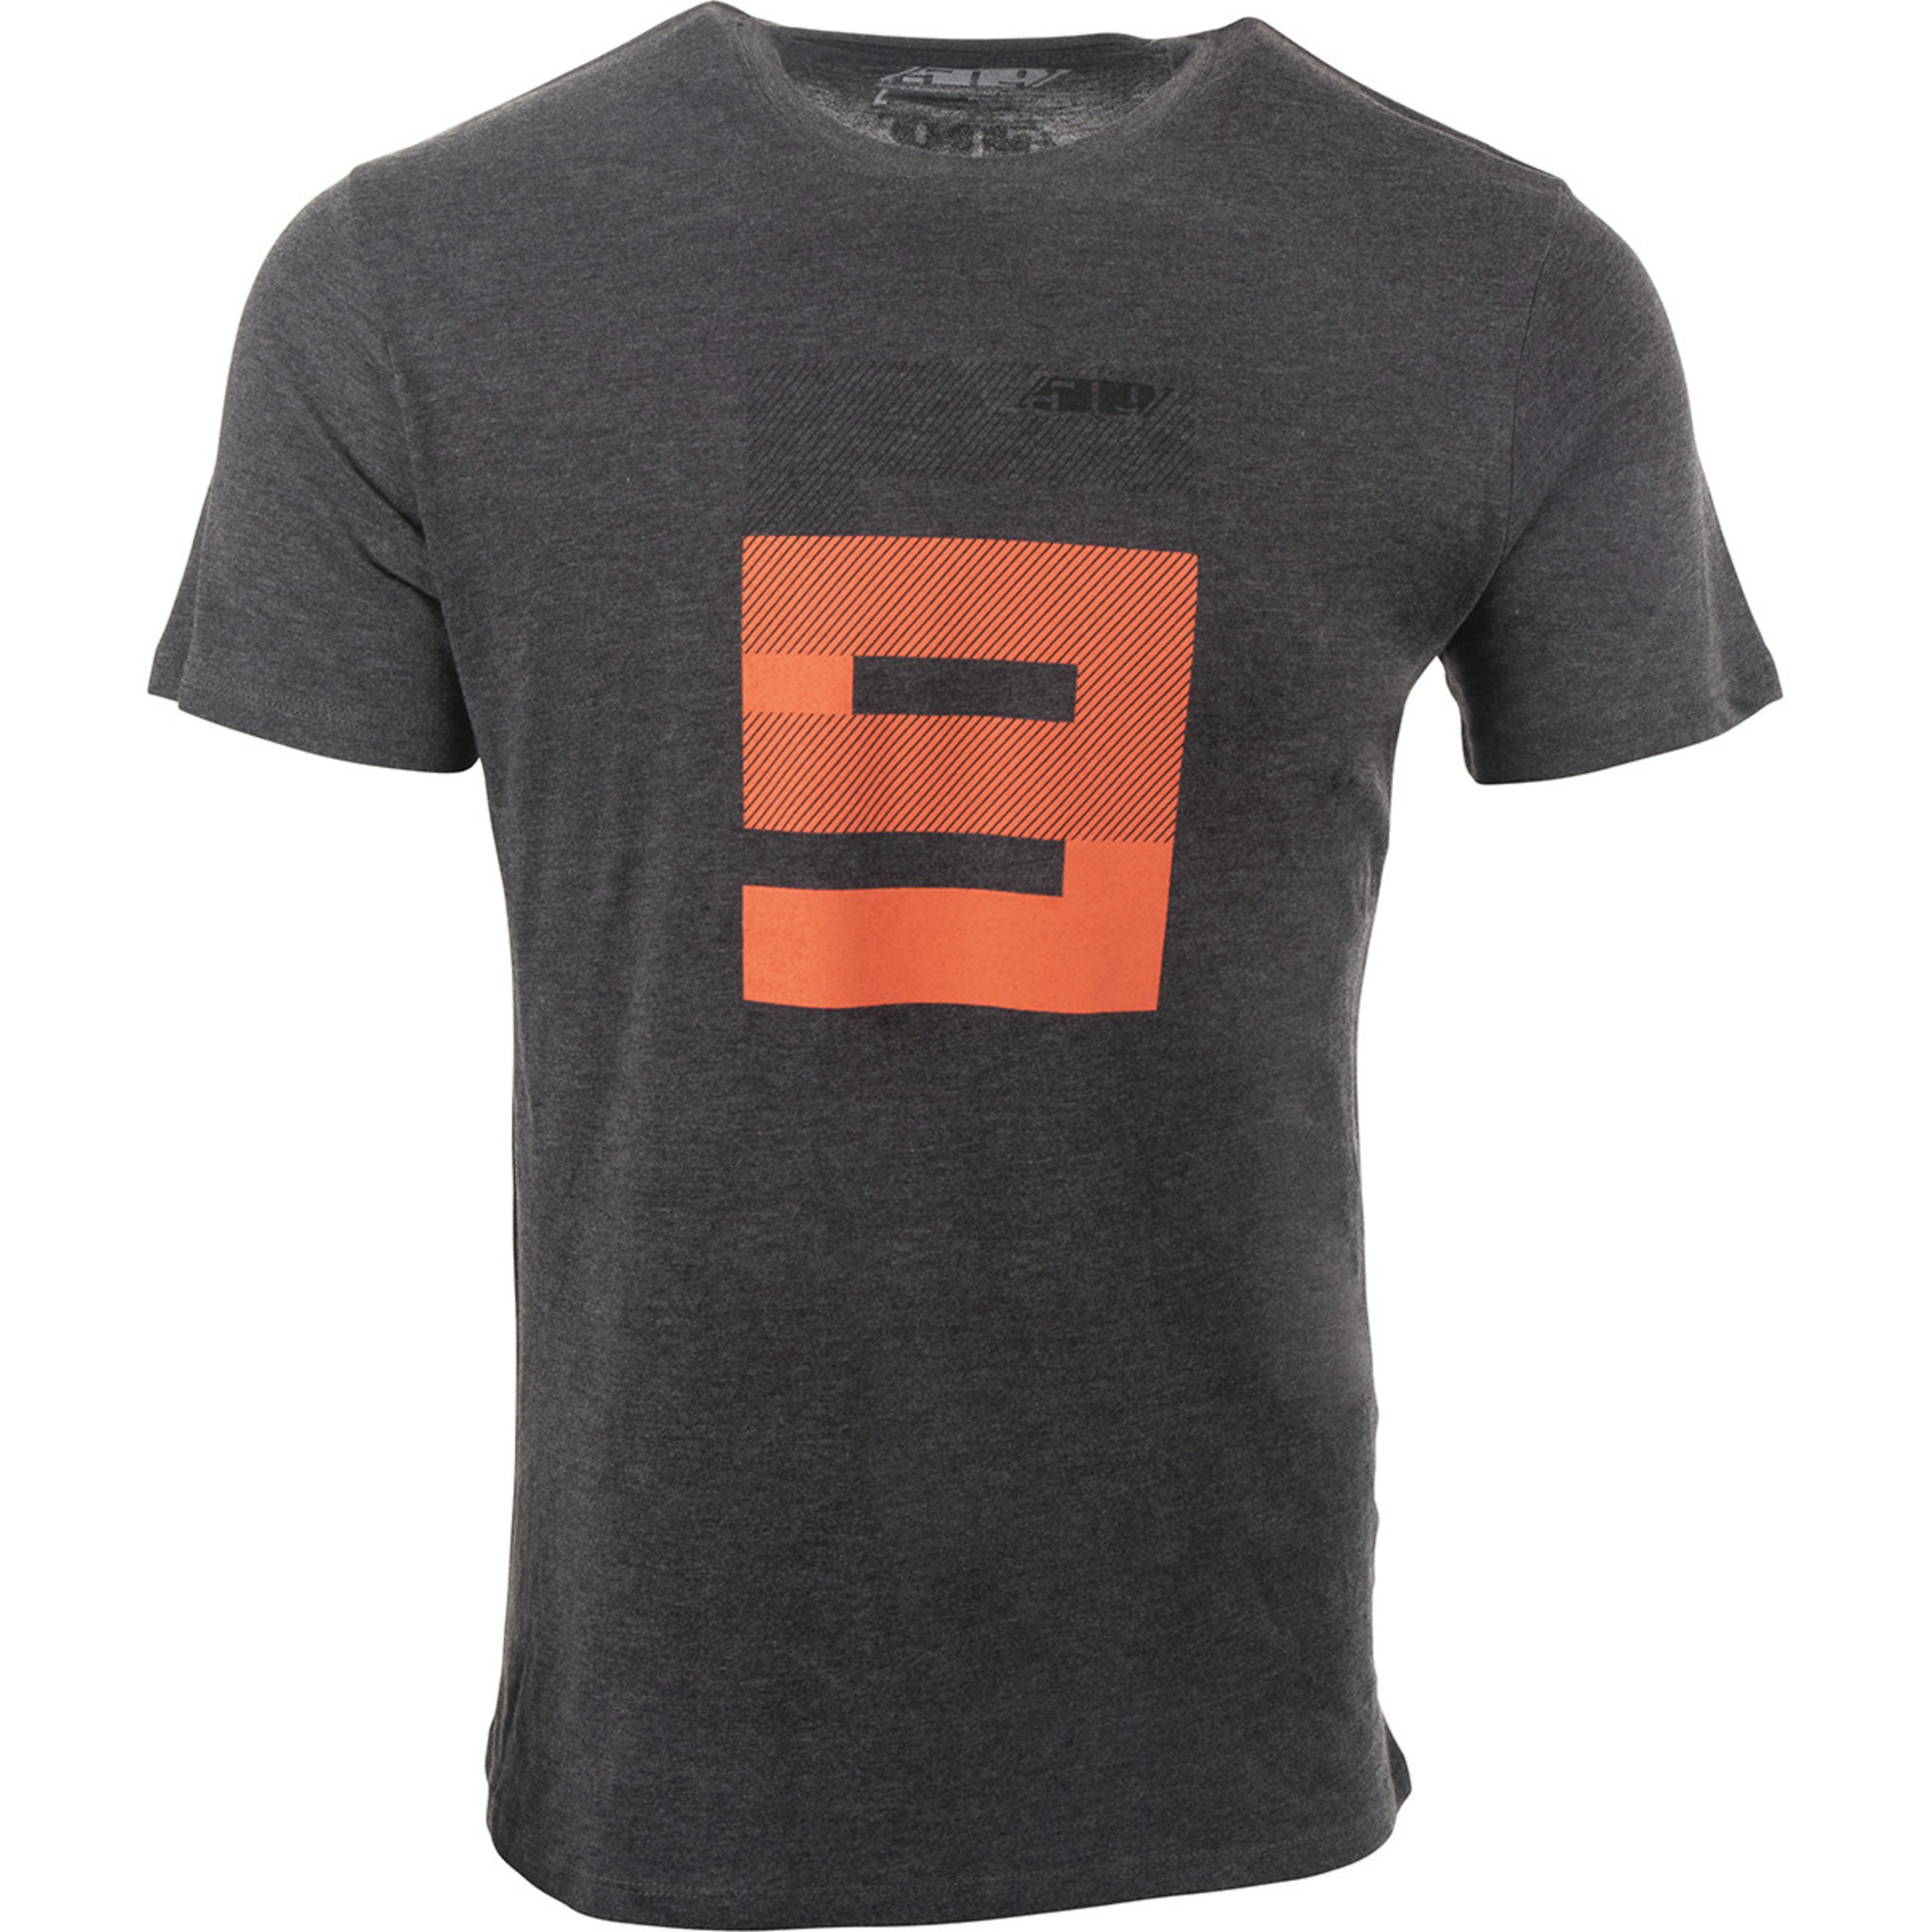 509 t-shirt shirts for men stack tech